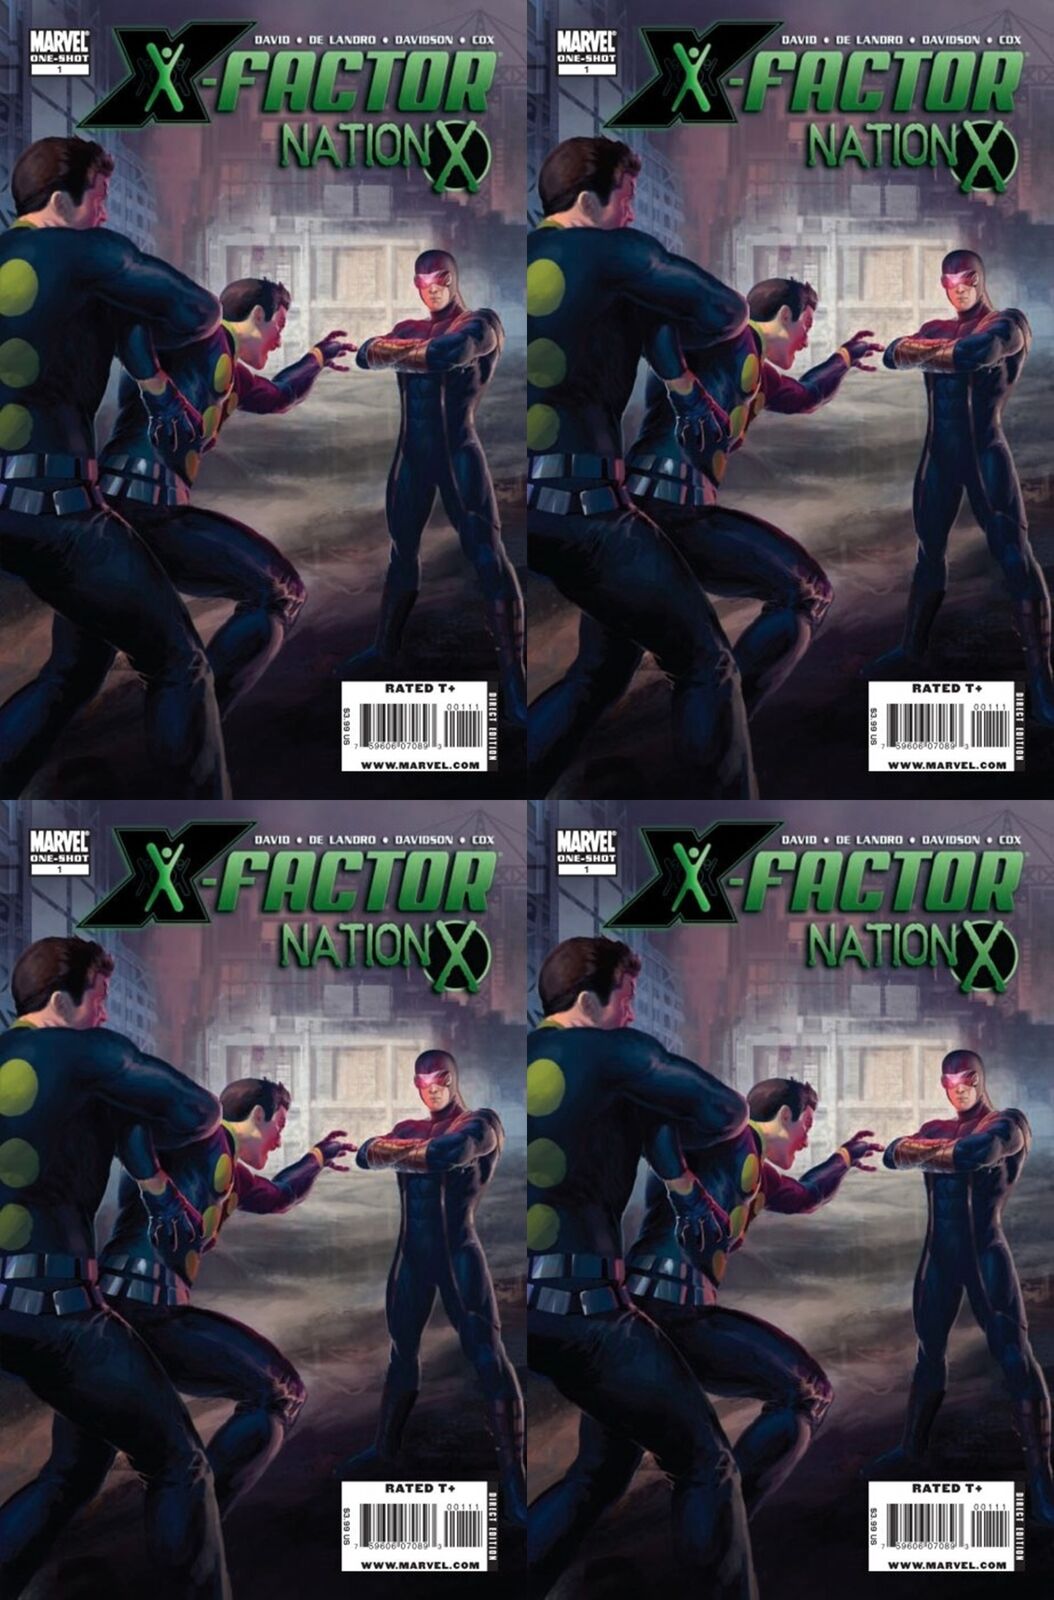 Nation X: X-Factor (2010) Marvel Comics - 4 Comics